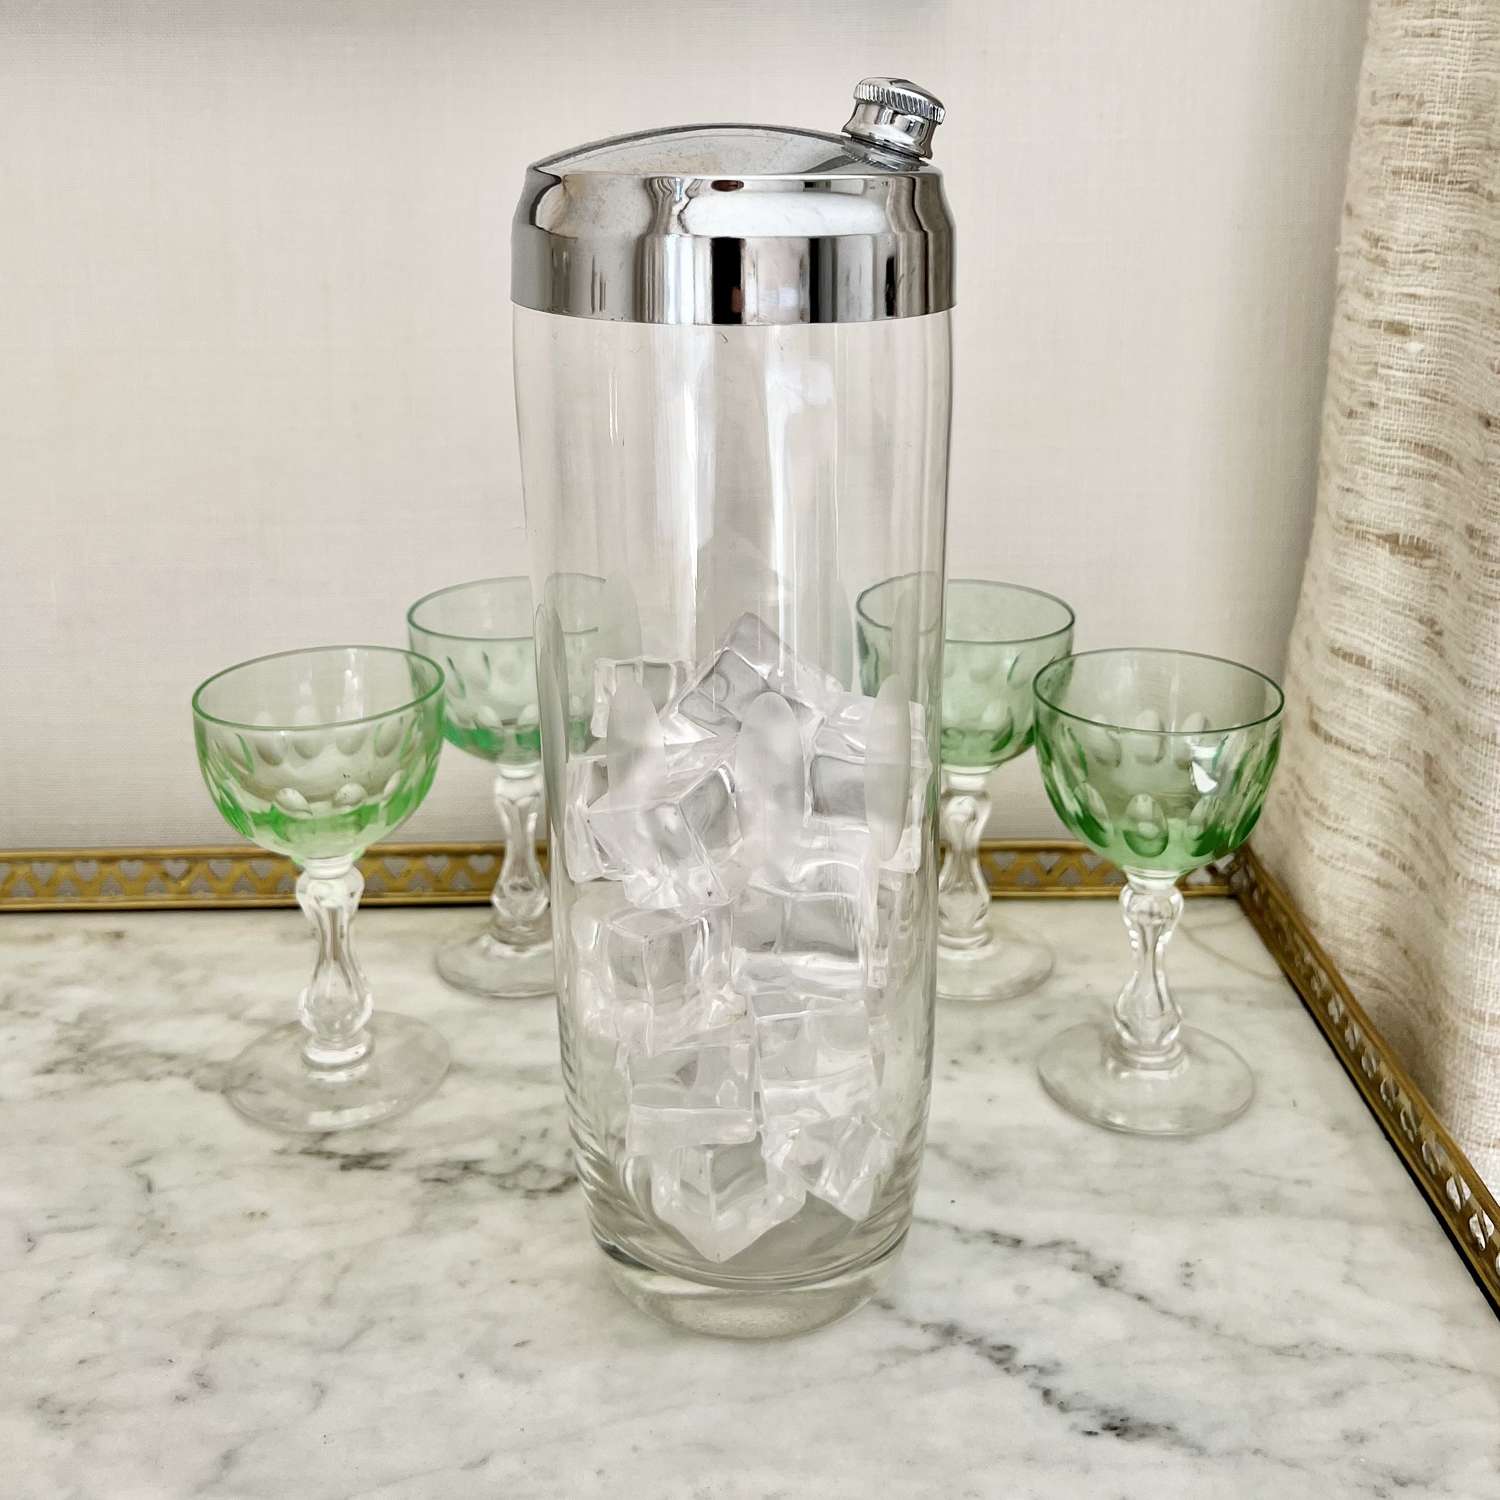 Massive Vintage Oval Etched Glass Cocktail Shaker